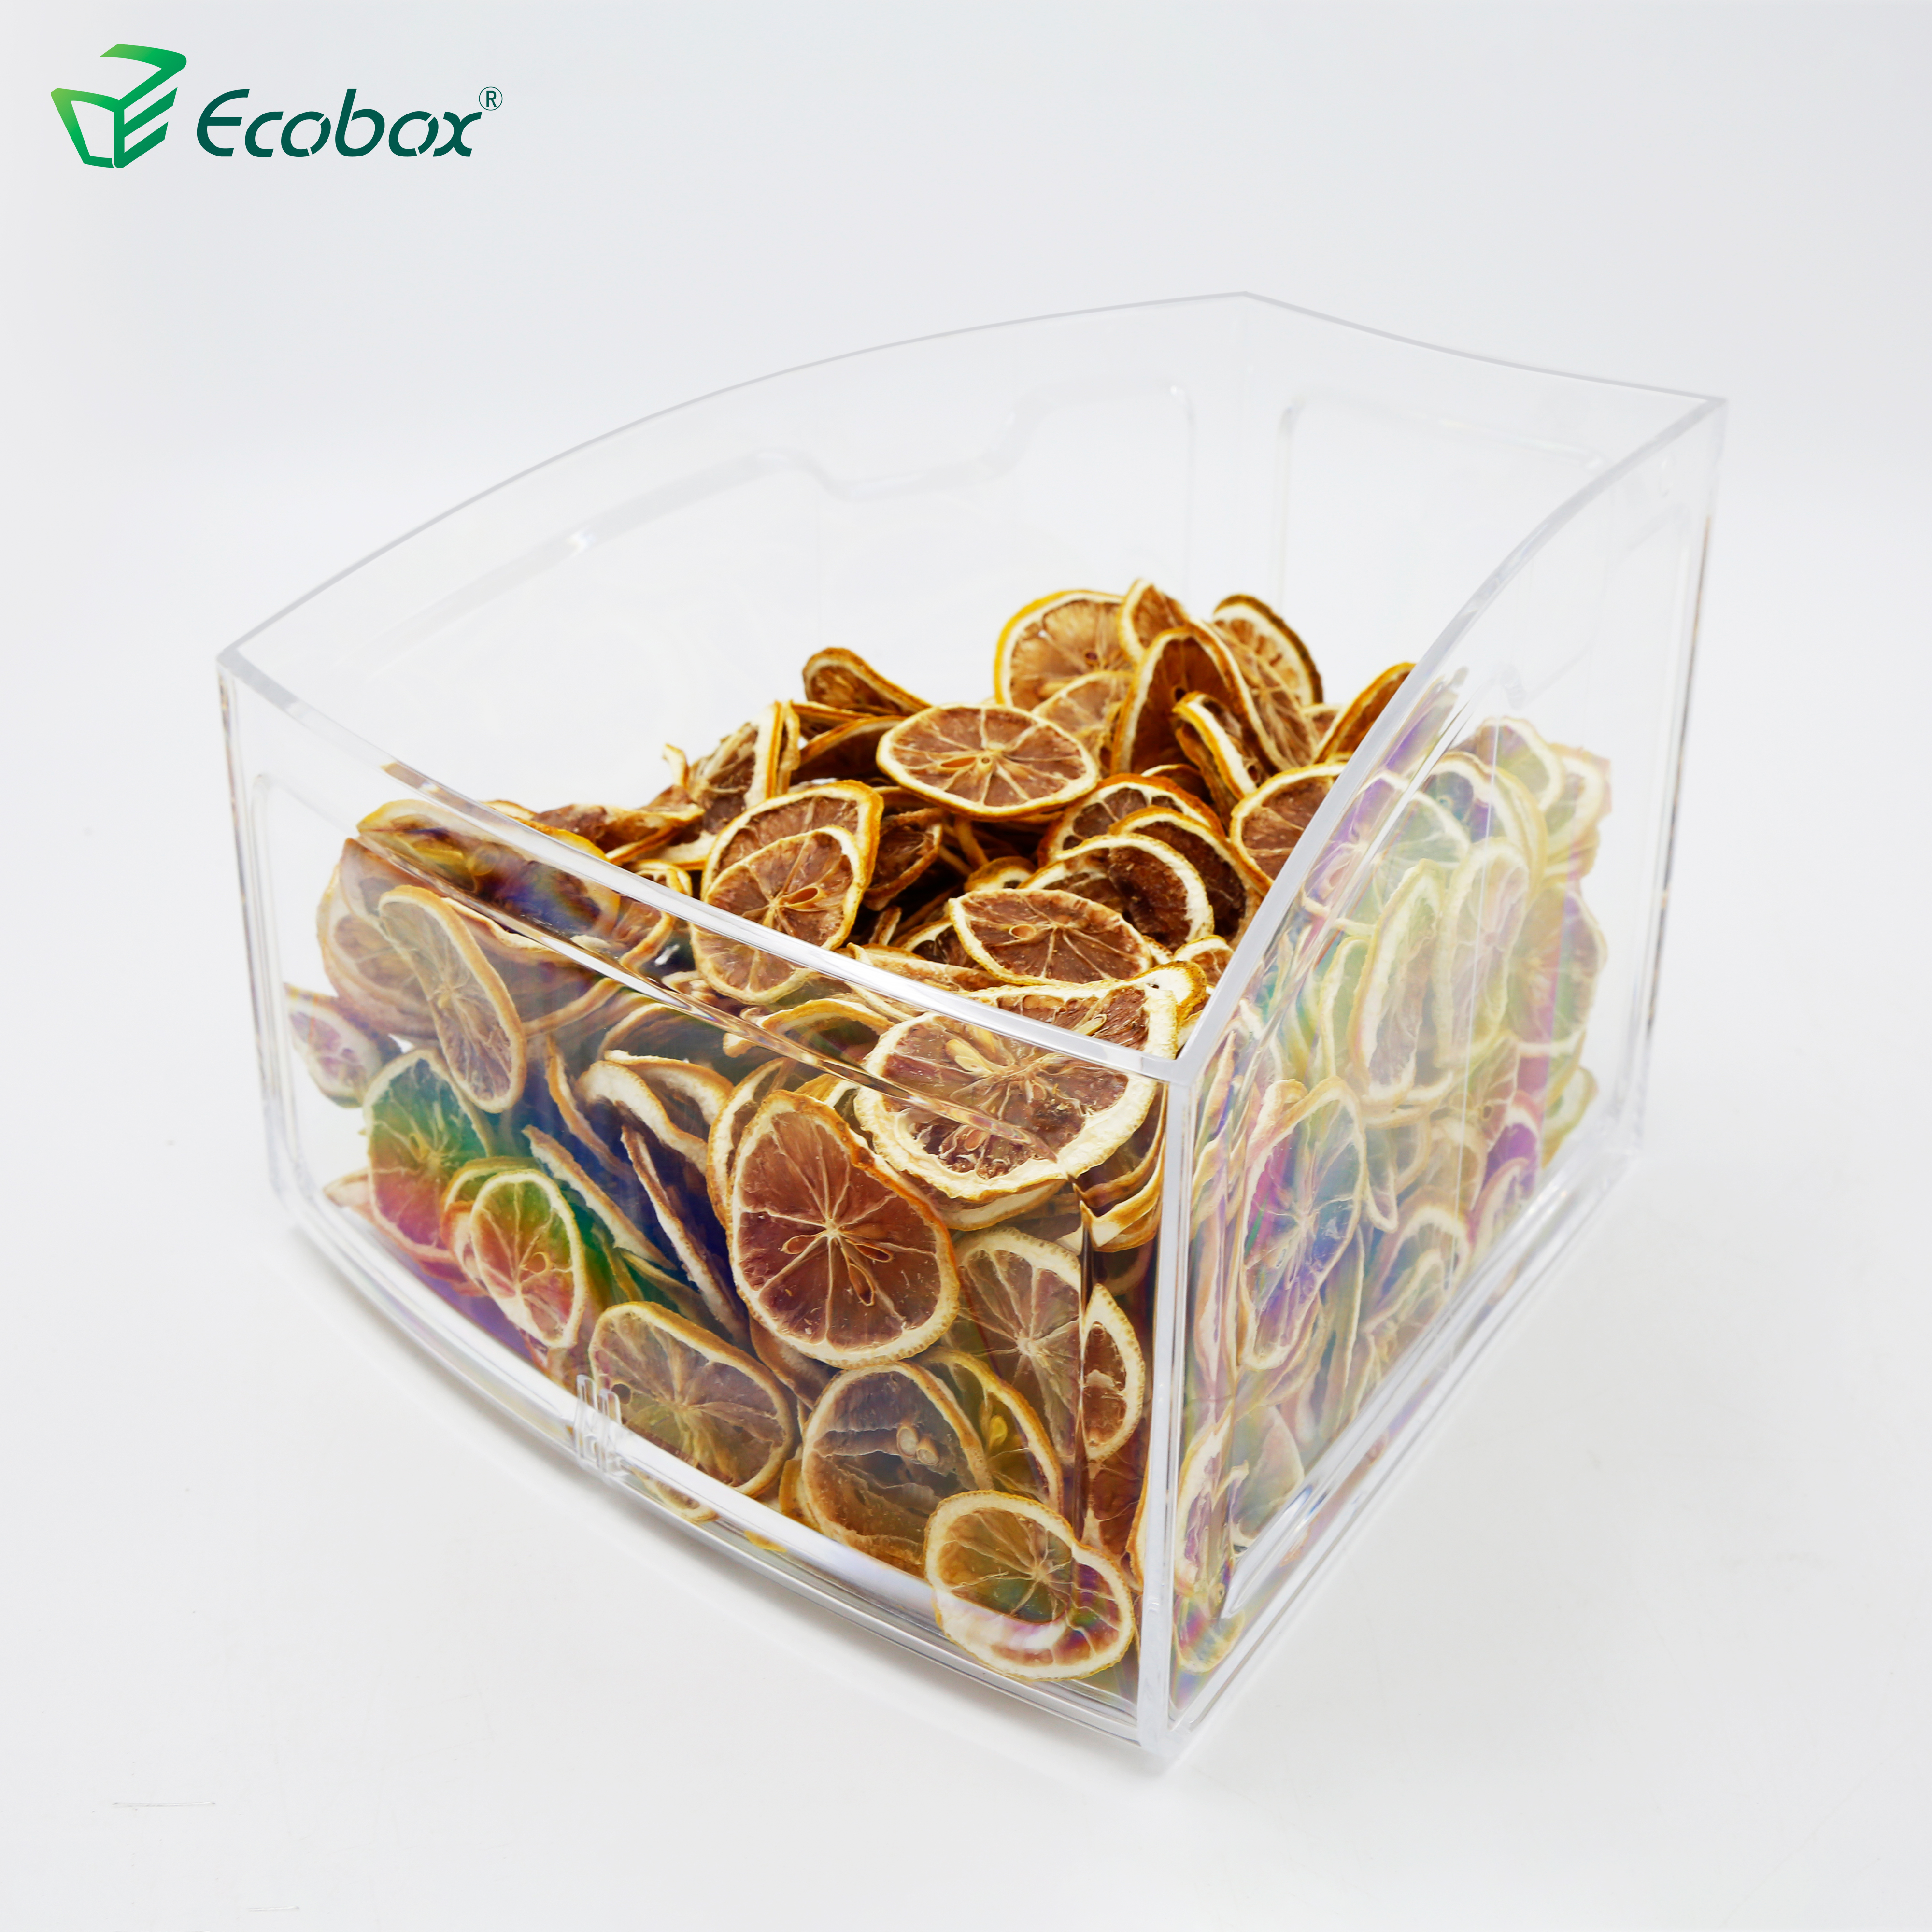 Ecobox SPH-010 Bogenform kleine Massennahrungsmittelbehälter für Supermarkt-Regal